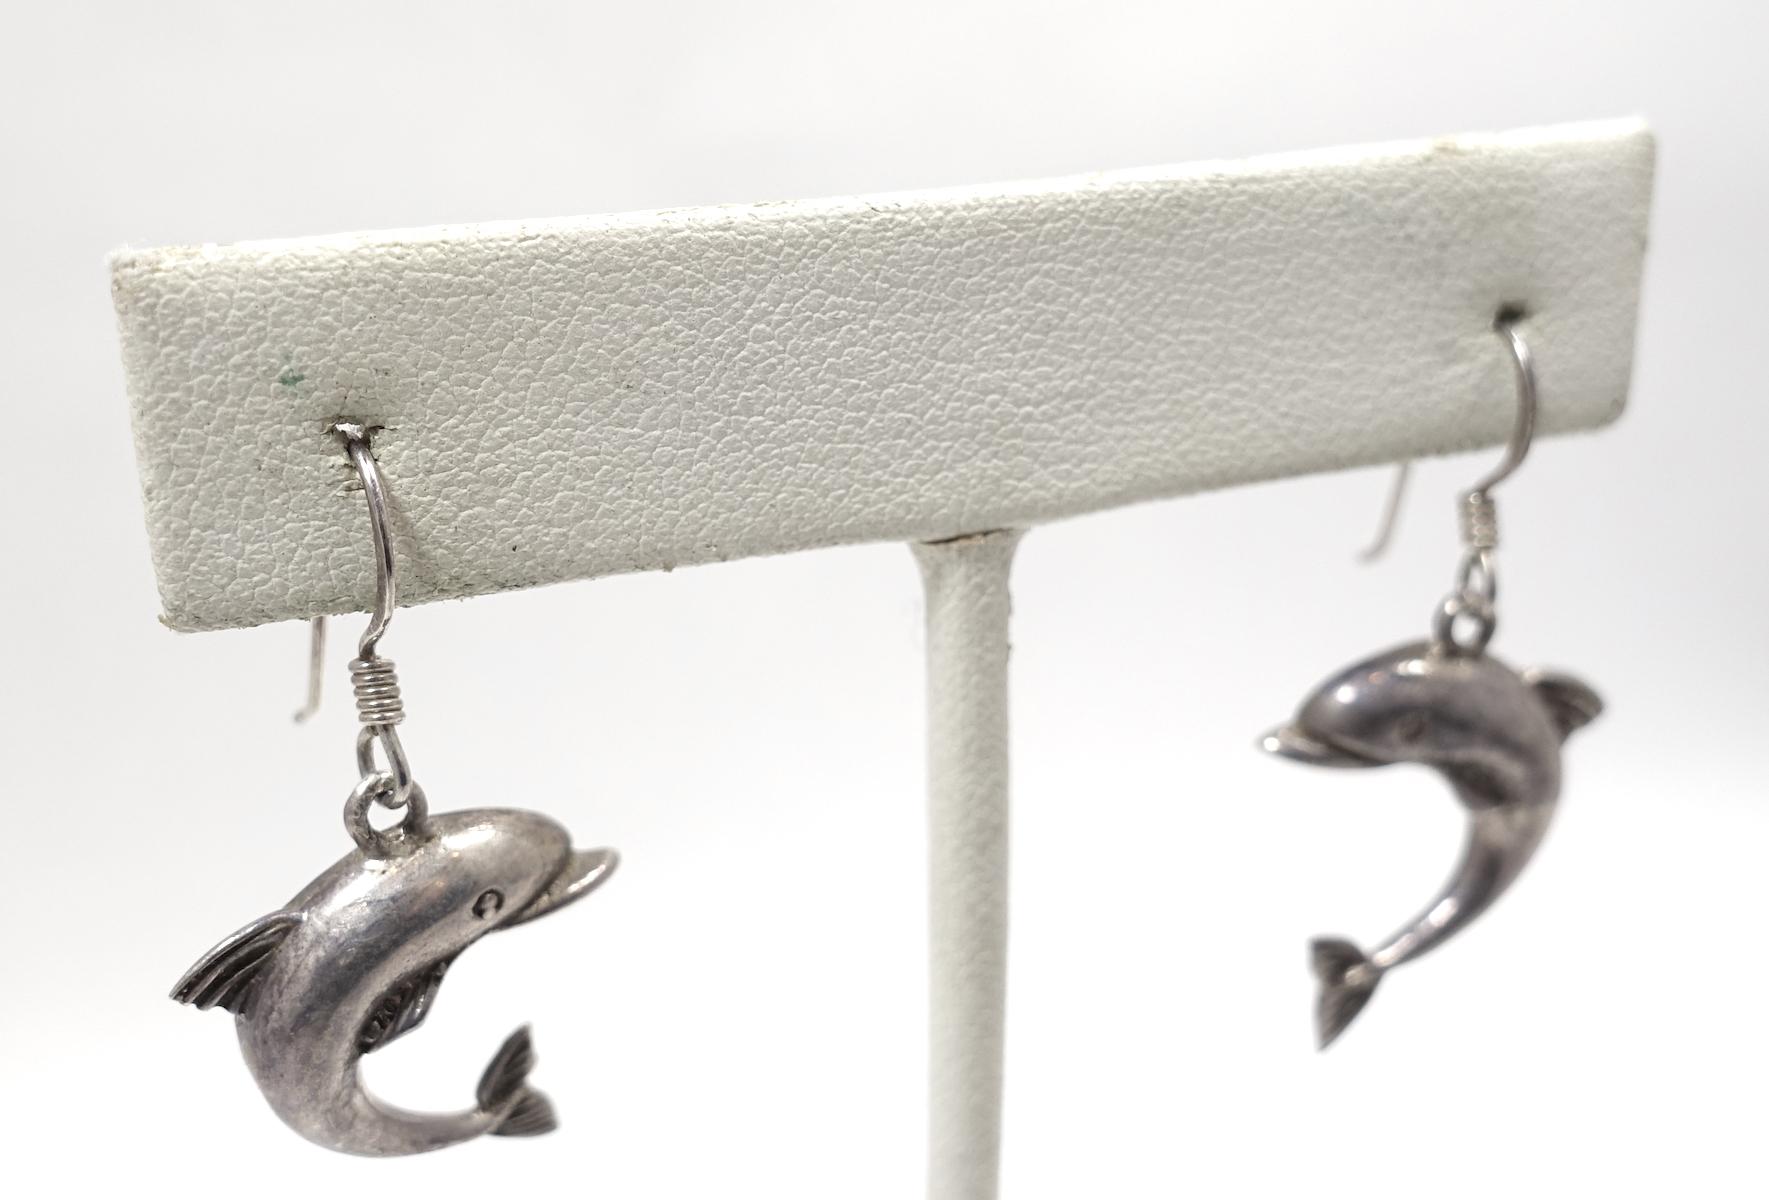 silver dolphin earrings